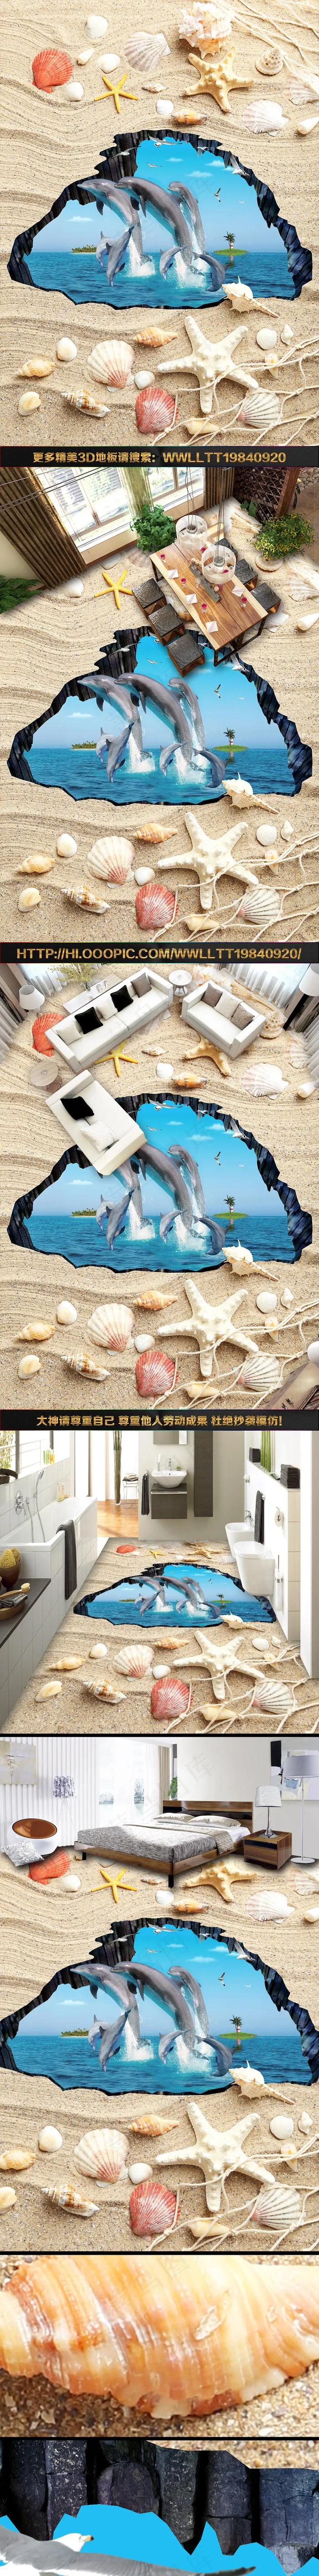 海星沙滩贝壳海豚3D立体画3D地板...